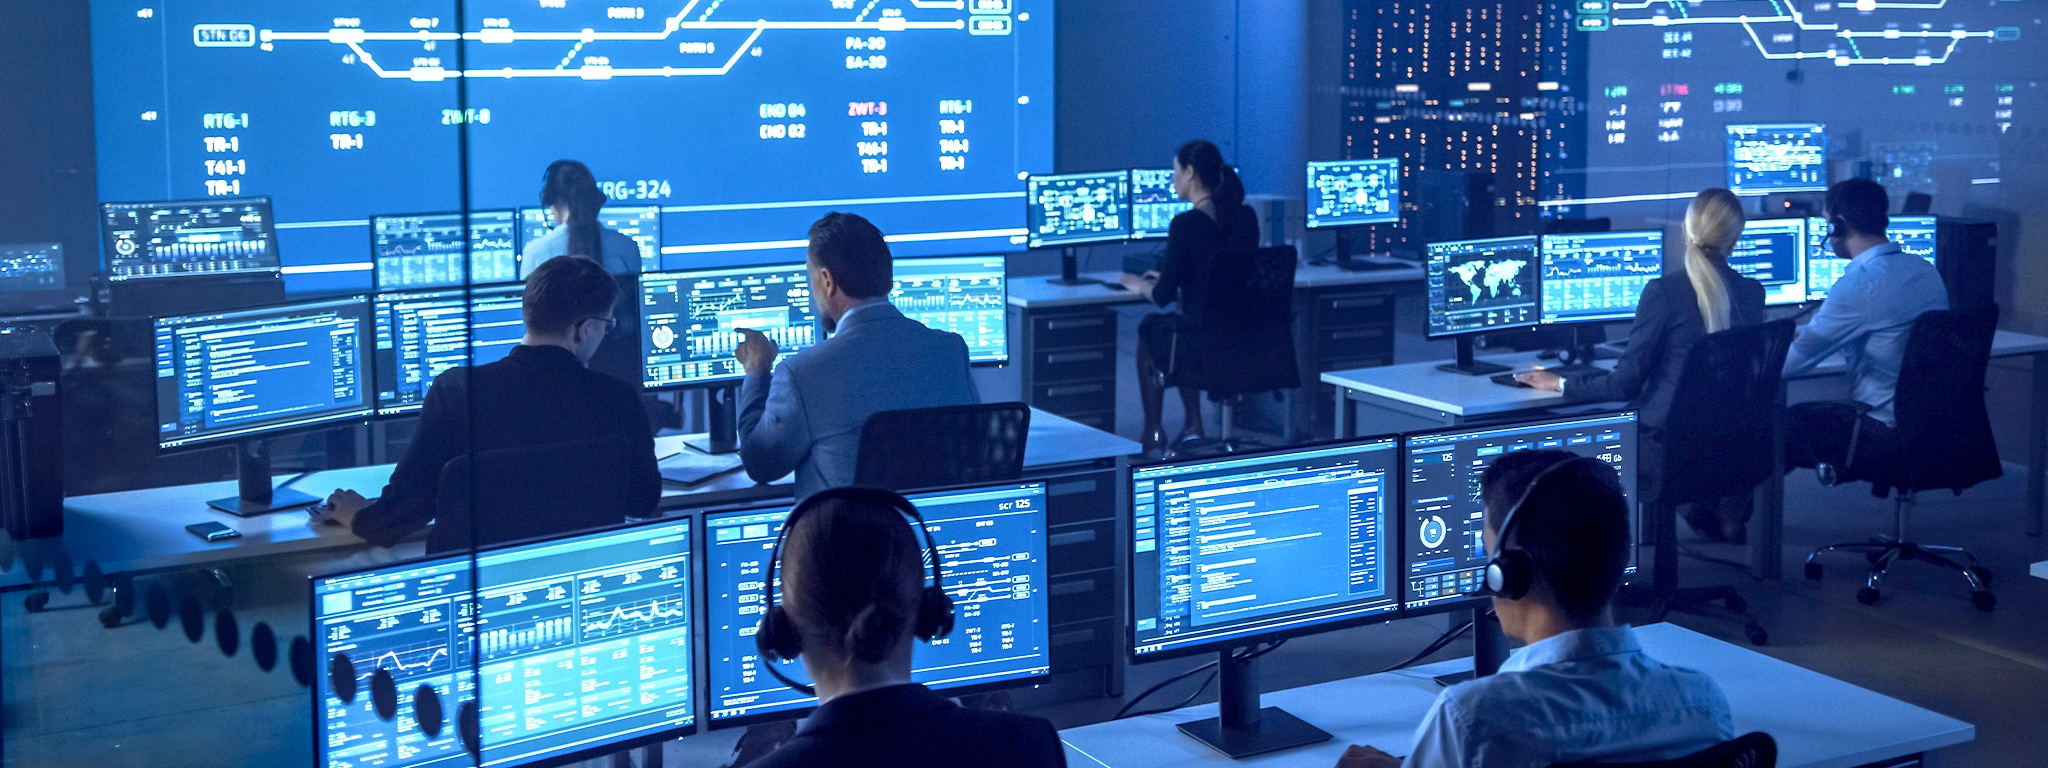 Immagine di un team di sicurezza nazionale in una sala di monitoraggio davanti a schermi di PC raffiguranti tabelle, grafici e statistiche